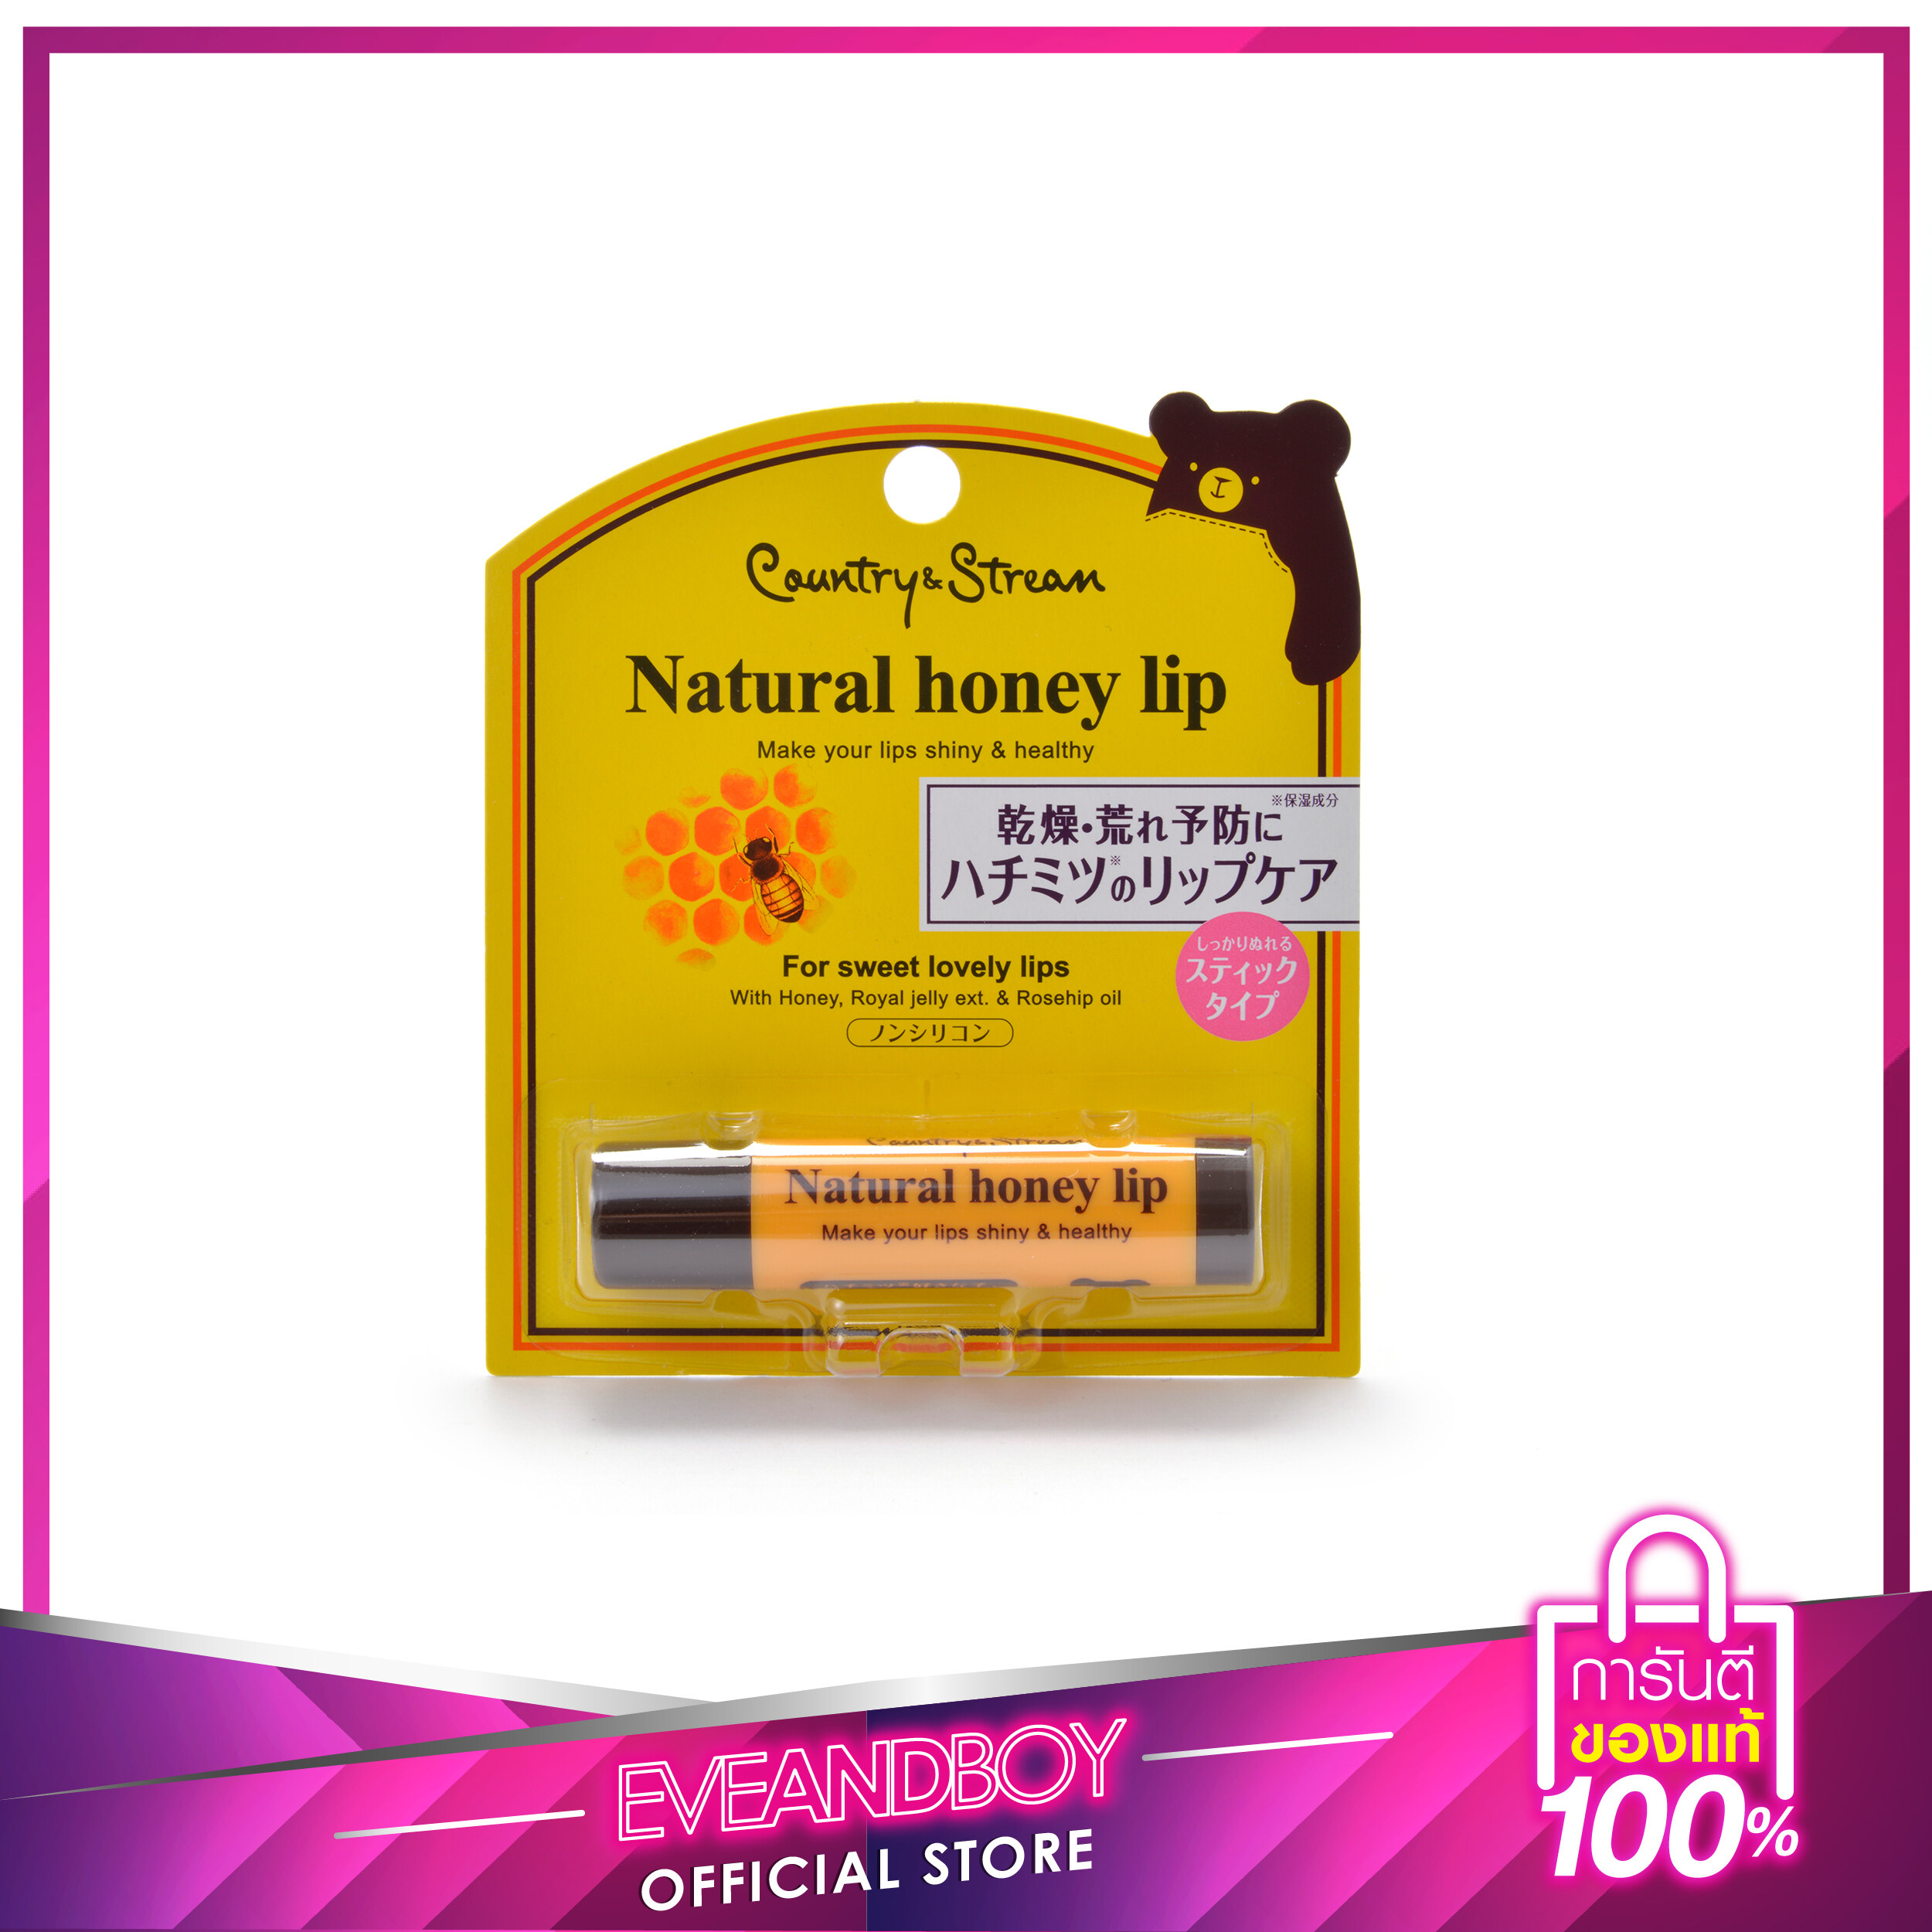 ลิปมันญาญ่า COUNTRY & STREAM - Natural Honey Lip HM 4.5 g.